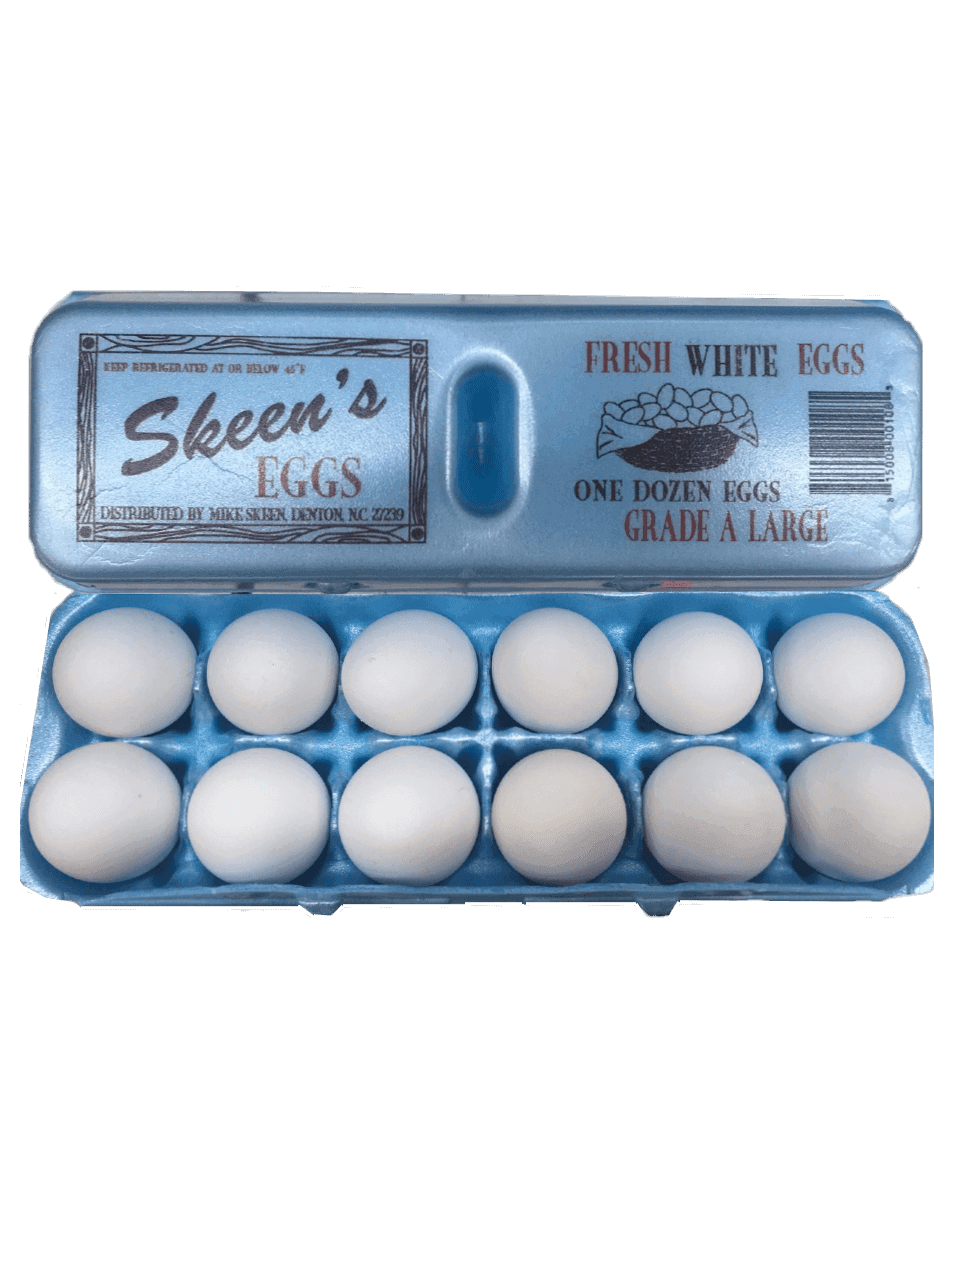 Skeen's - Fresh White Eggs 1 Dozen Grade A Large